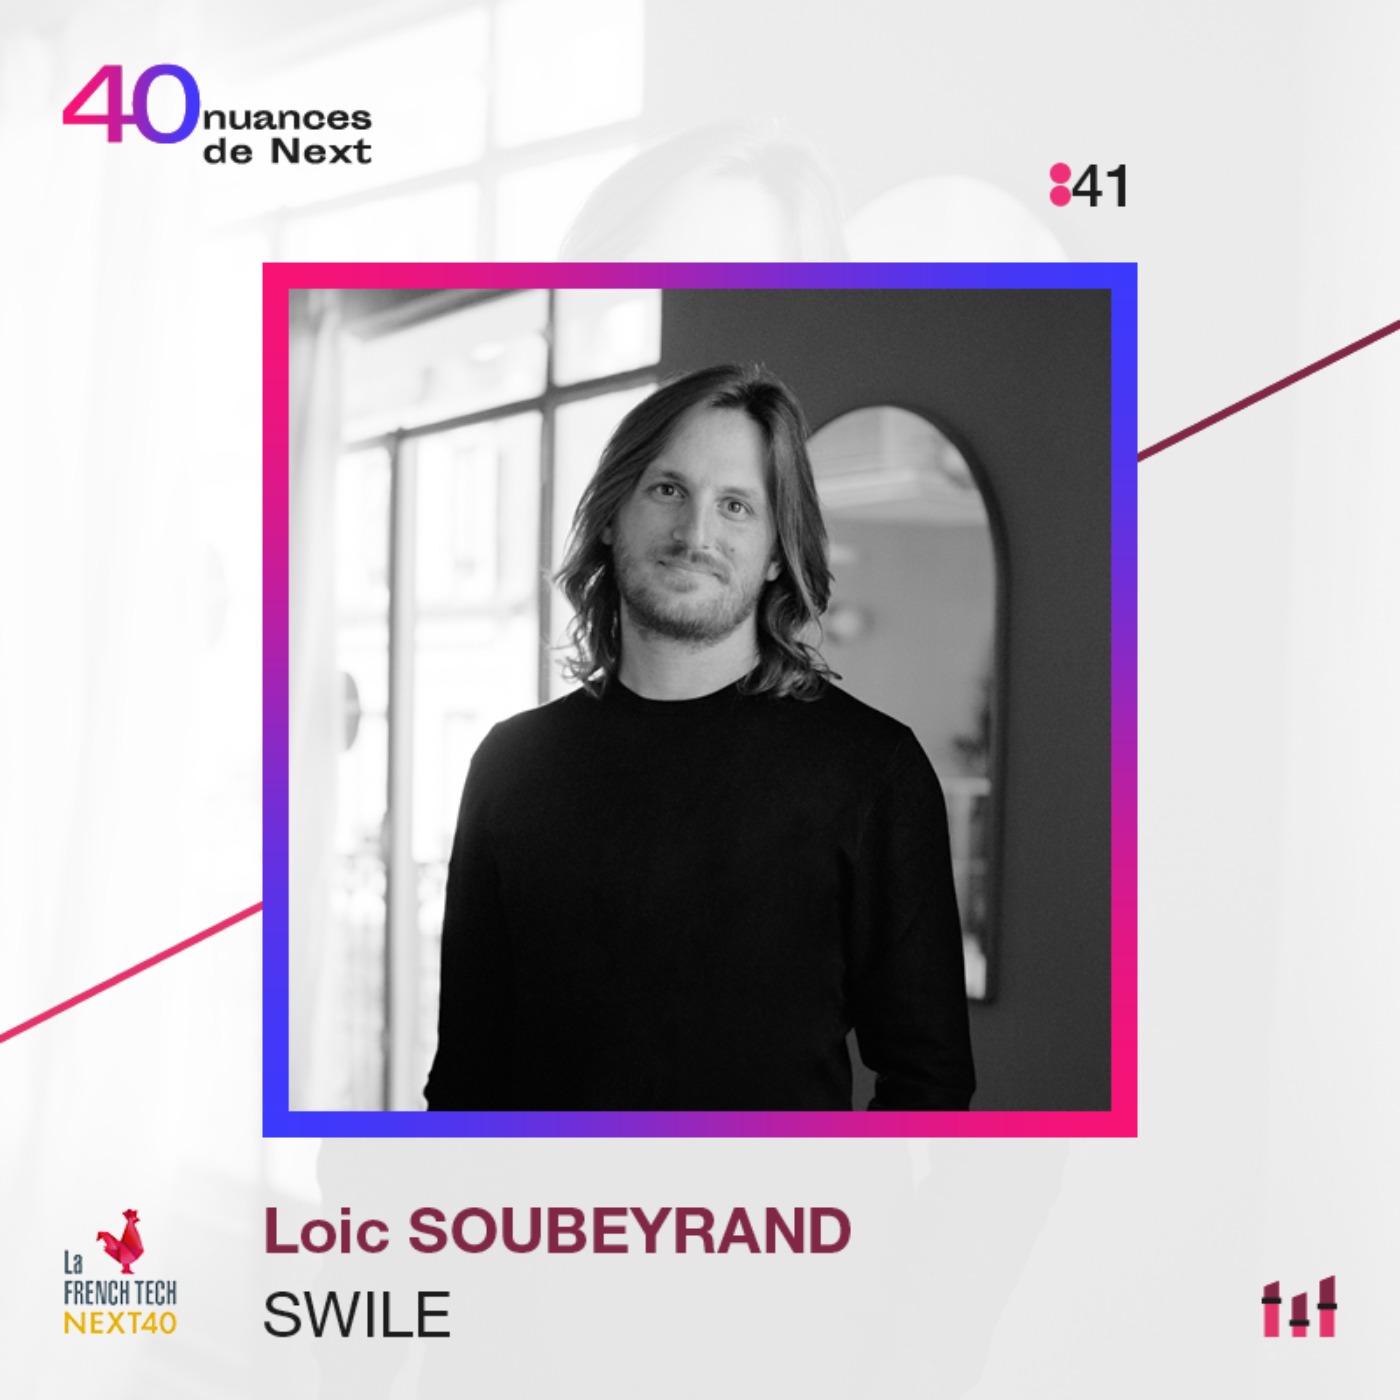 [BEST OF] Loïc Soubeyrand - Swile : « multipliez vos ambitions par 10 et demandez vous comment y arriver"